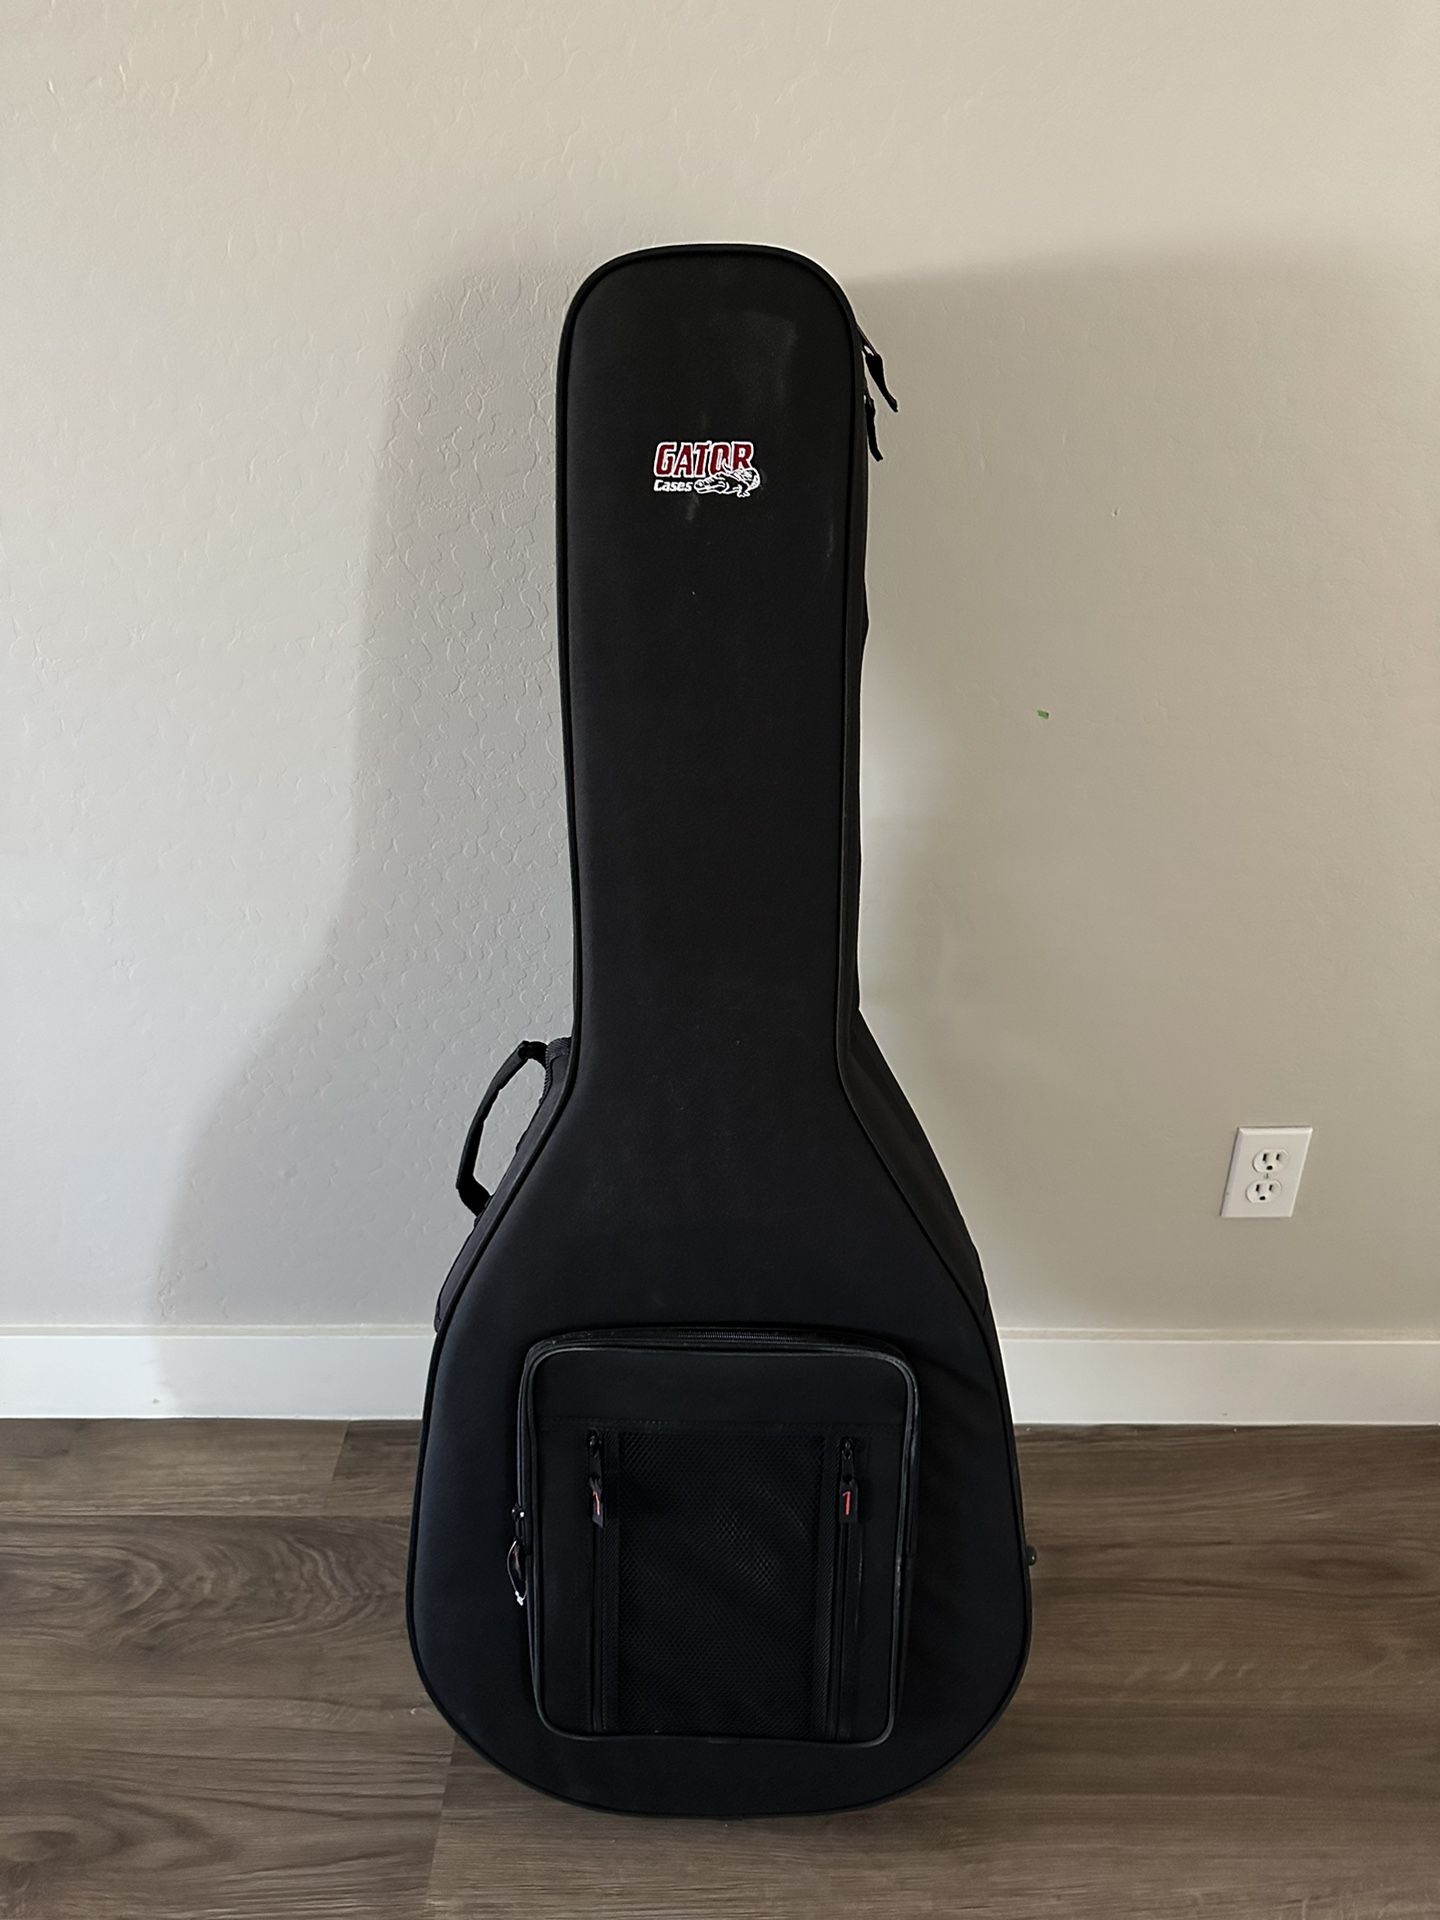 Guitar Gator Travel Soft Bag ~BRAND NEW~